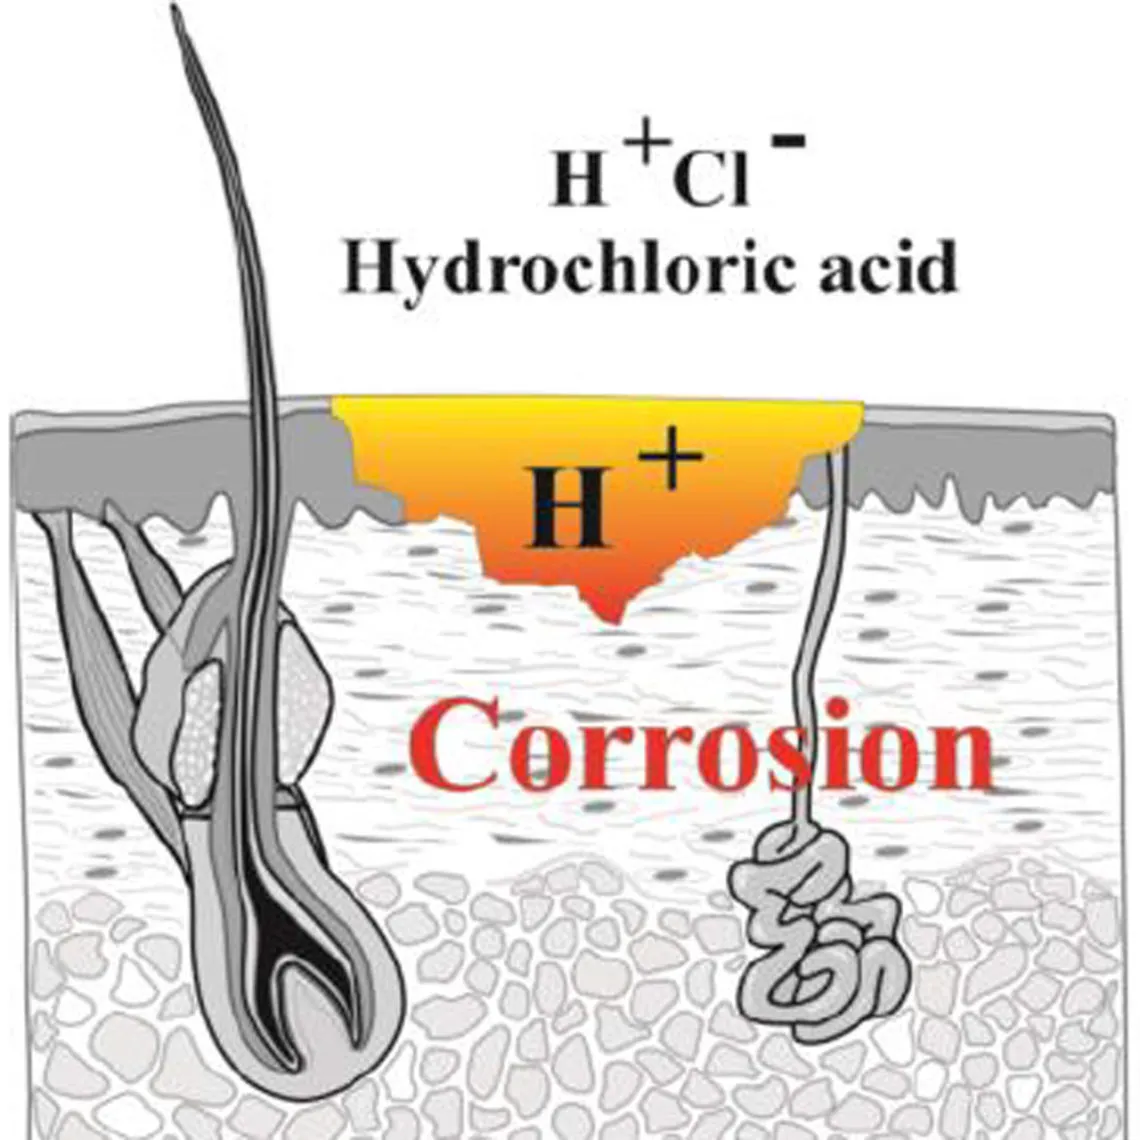 diagrama que muestra los efectos del ácido clorhídrico sobre el organismo en contacto con él: corrosión